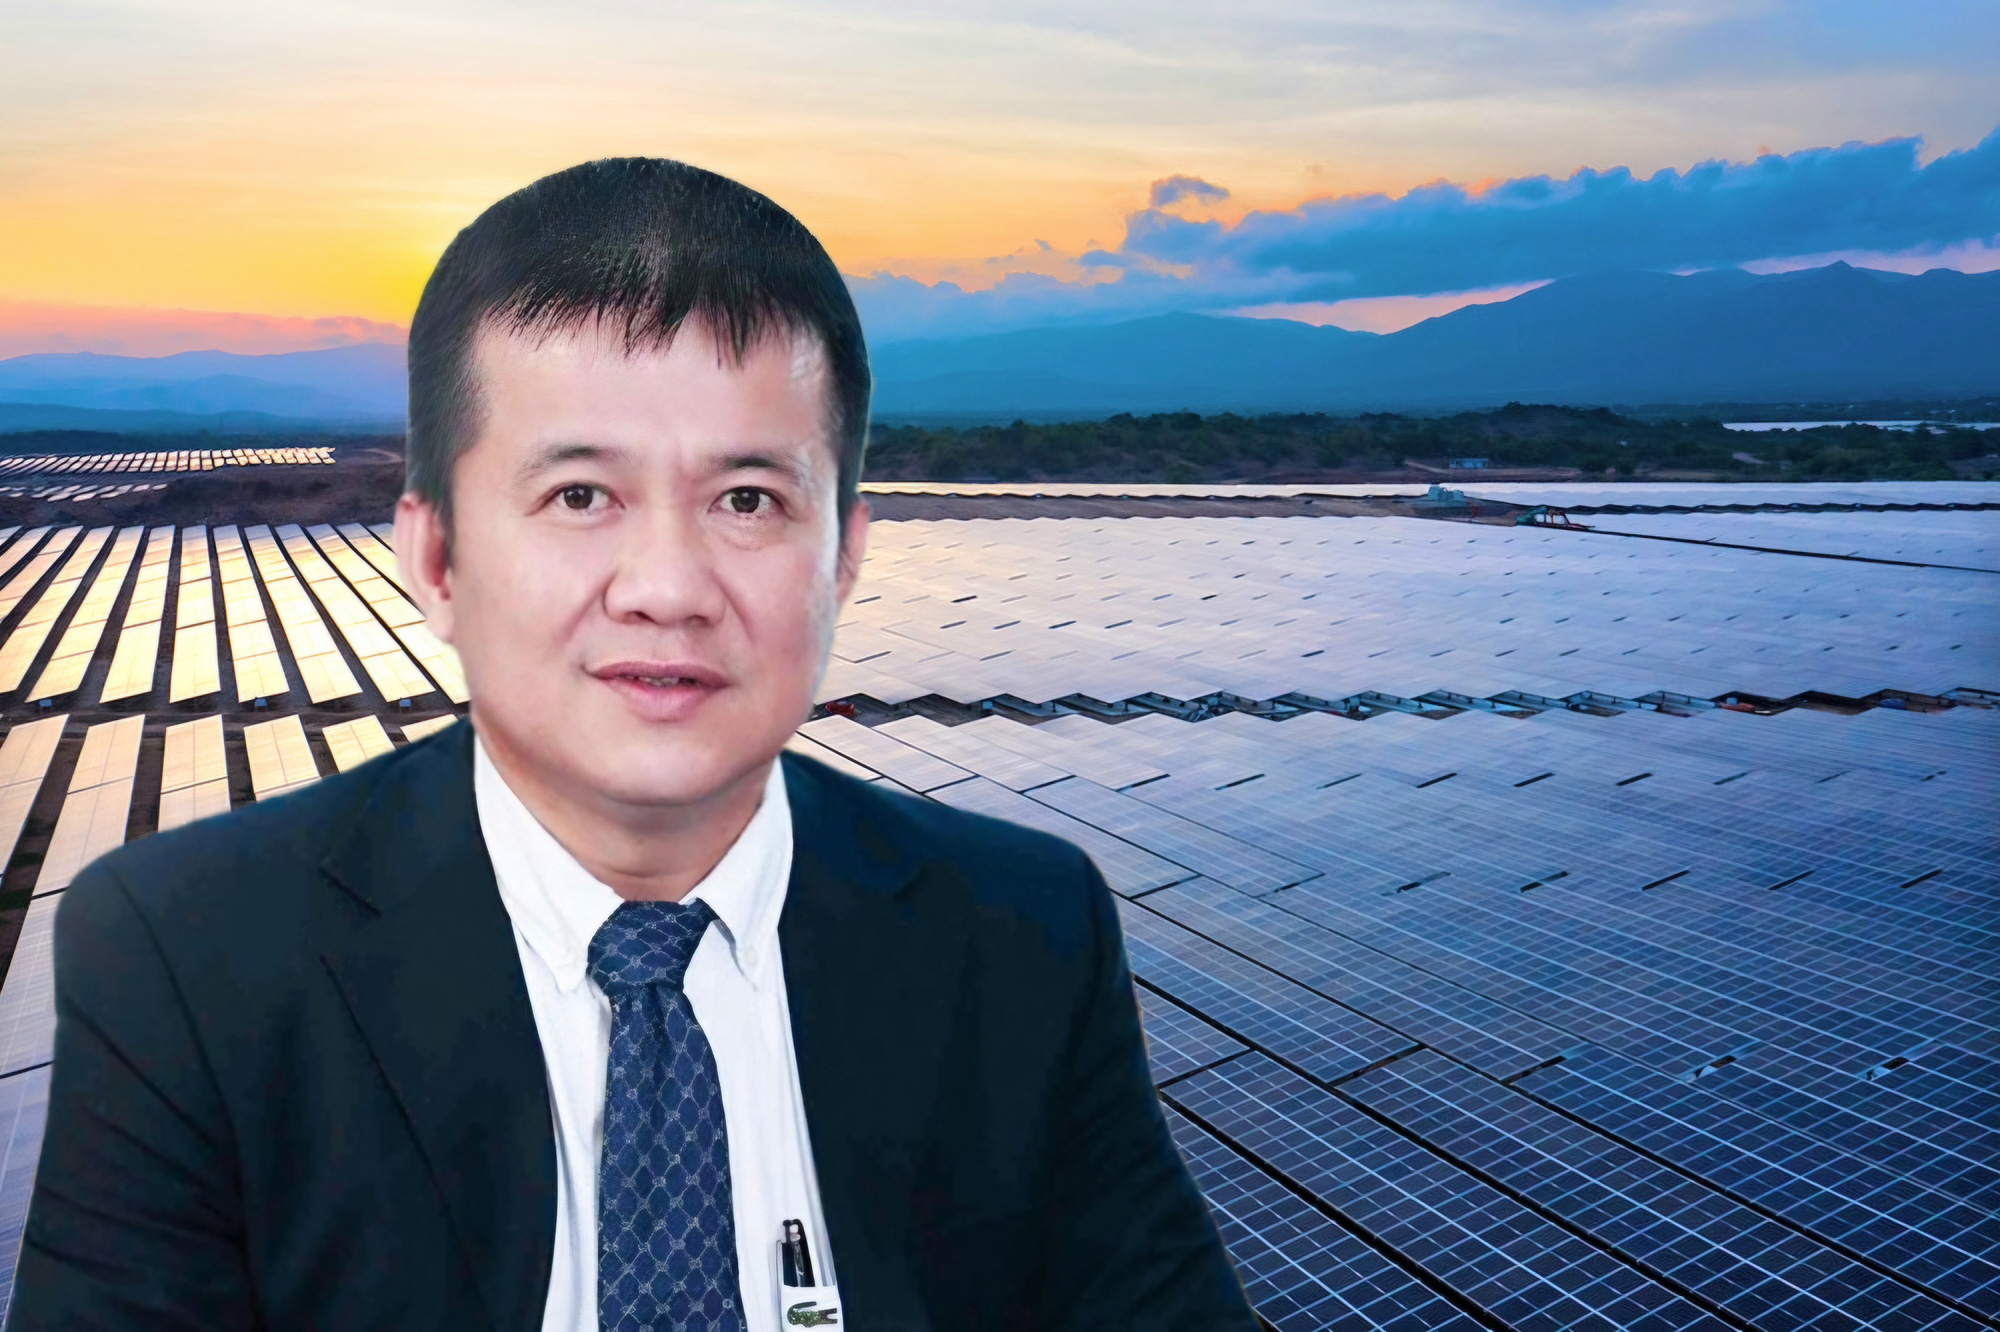 Cơ quan chức năng đã gỡ tạm hoãn xuất cảnh đối với ông Nguyễn Tâm Thịnh - chủ tịch hội đồng quản trị Công ty CP đầu tư xây dựng Trung Nam, kể từ ngày 1-6 - Ảnh: T.N.